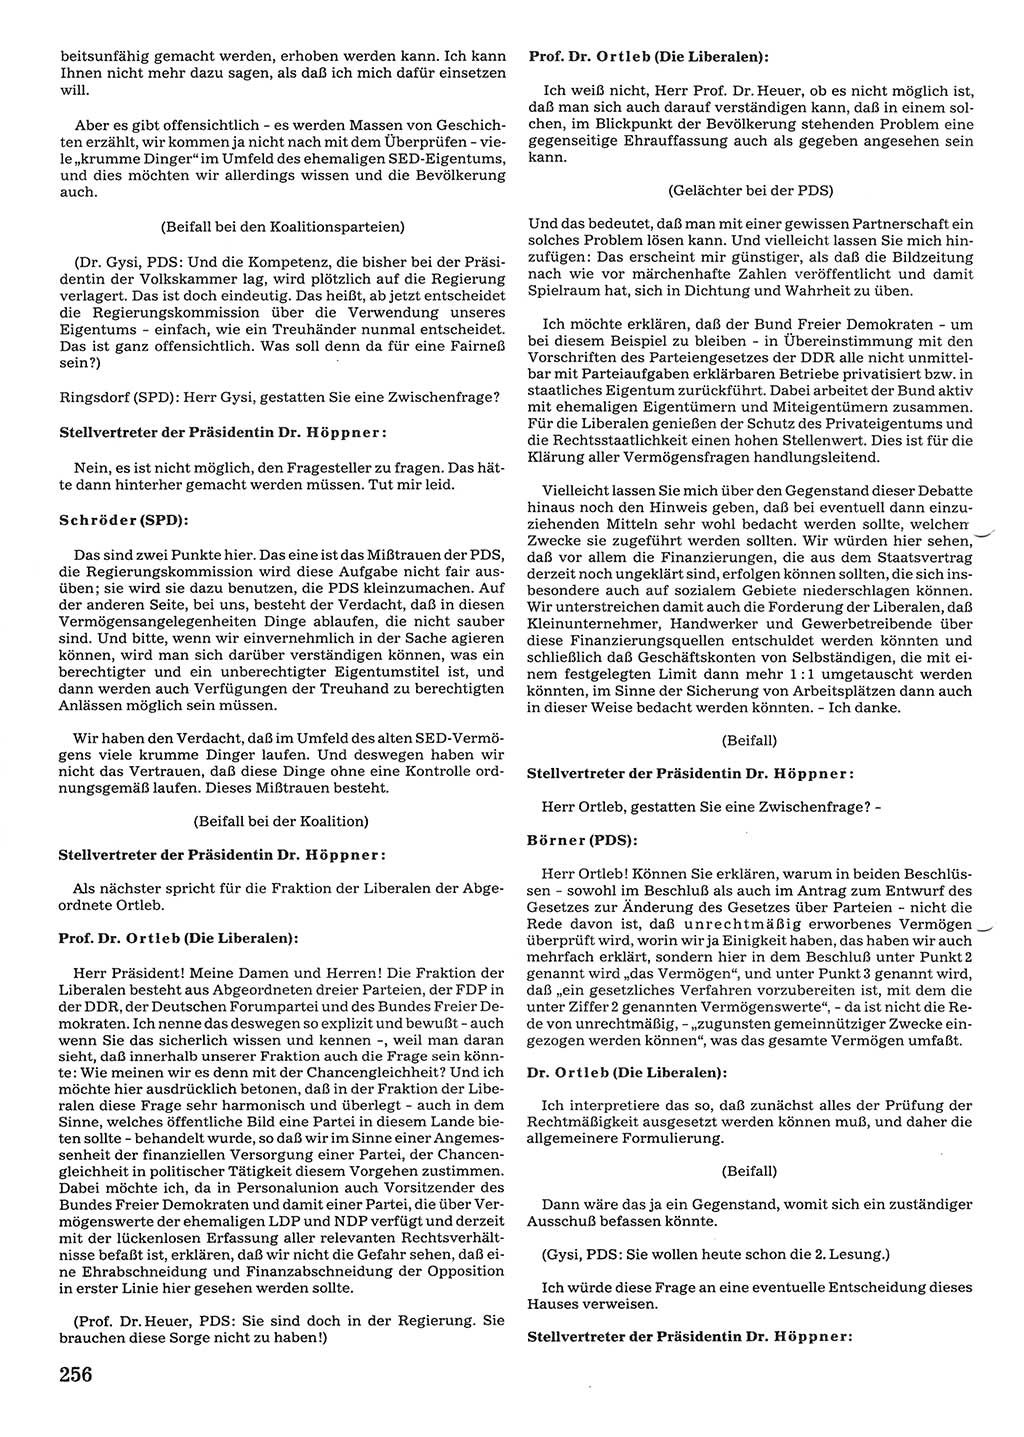 Tagungen der Volkskammer (VK) der Deutschen Demokratischen Republik (DDR), 10. Wahlperiode 1990, Seite 256 (VK. DDR 10. WP. 1990, Prot. Tg. 1-38, 5.4.-2.10.1990, S. 256)